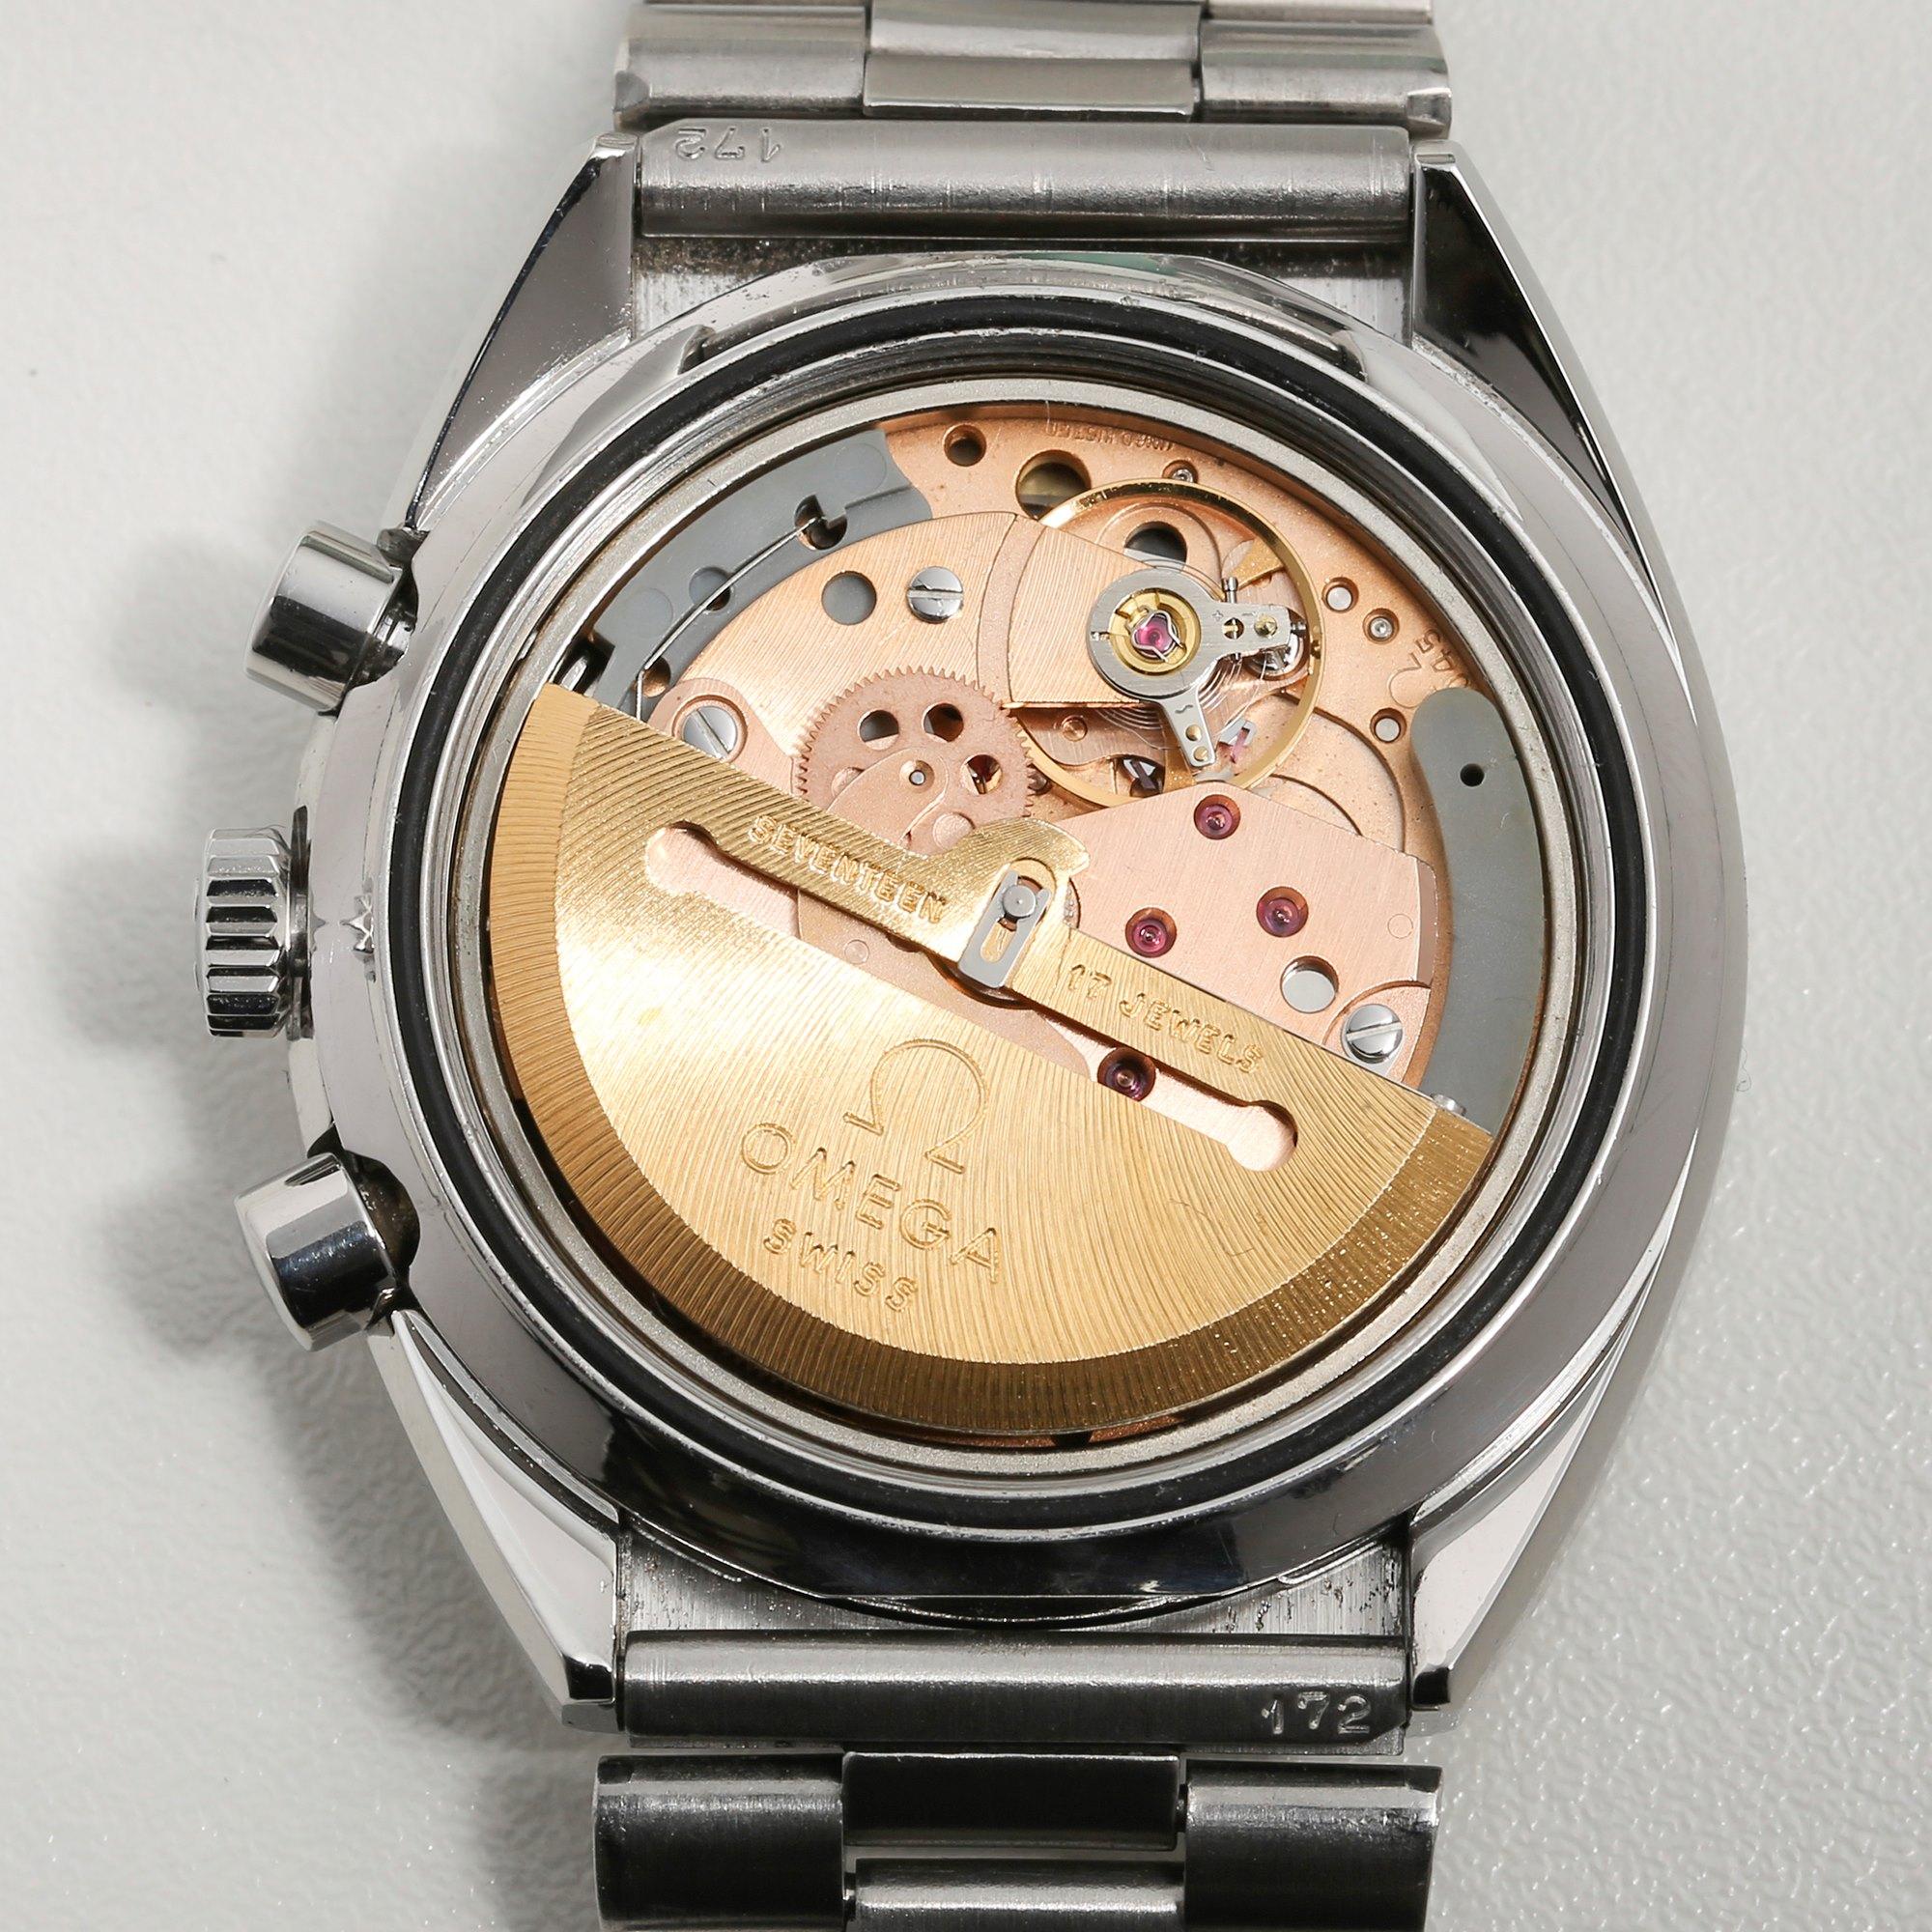 Omega Speedmaster Mark 4.5 Men's Stainless Steel Chronograph Watch 5